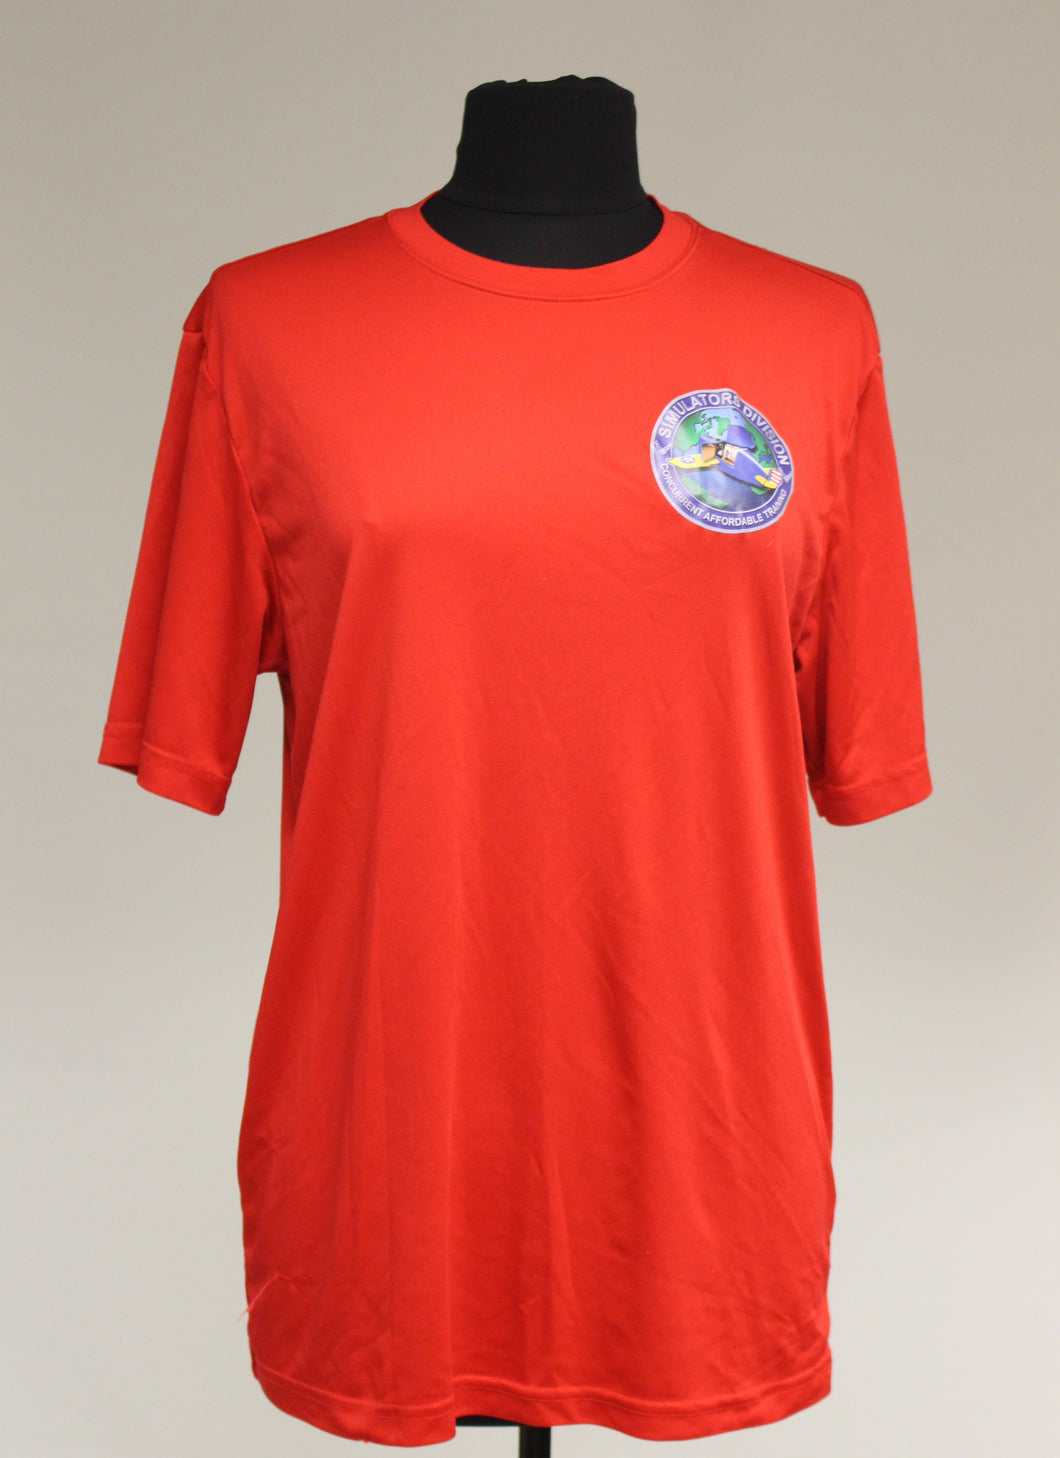 Simulators Division Concurrent Affordable Training T-Shirt, Red, Medium